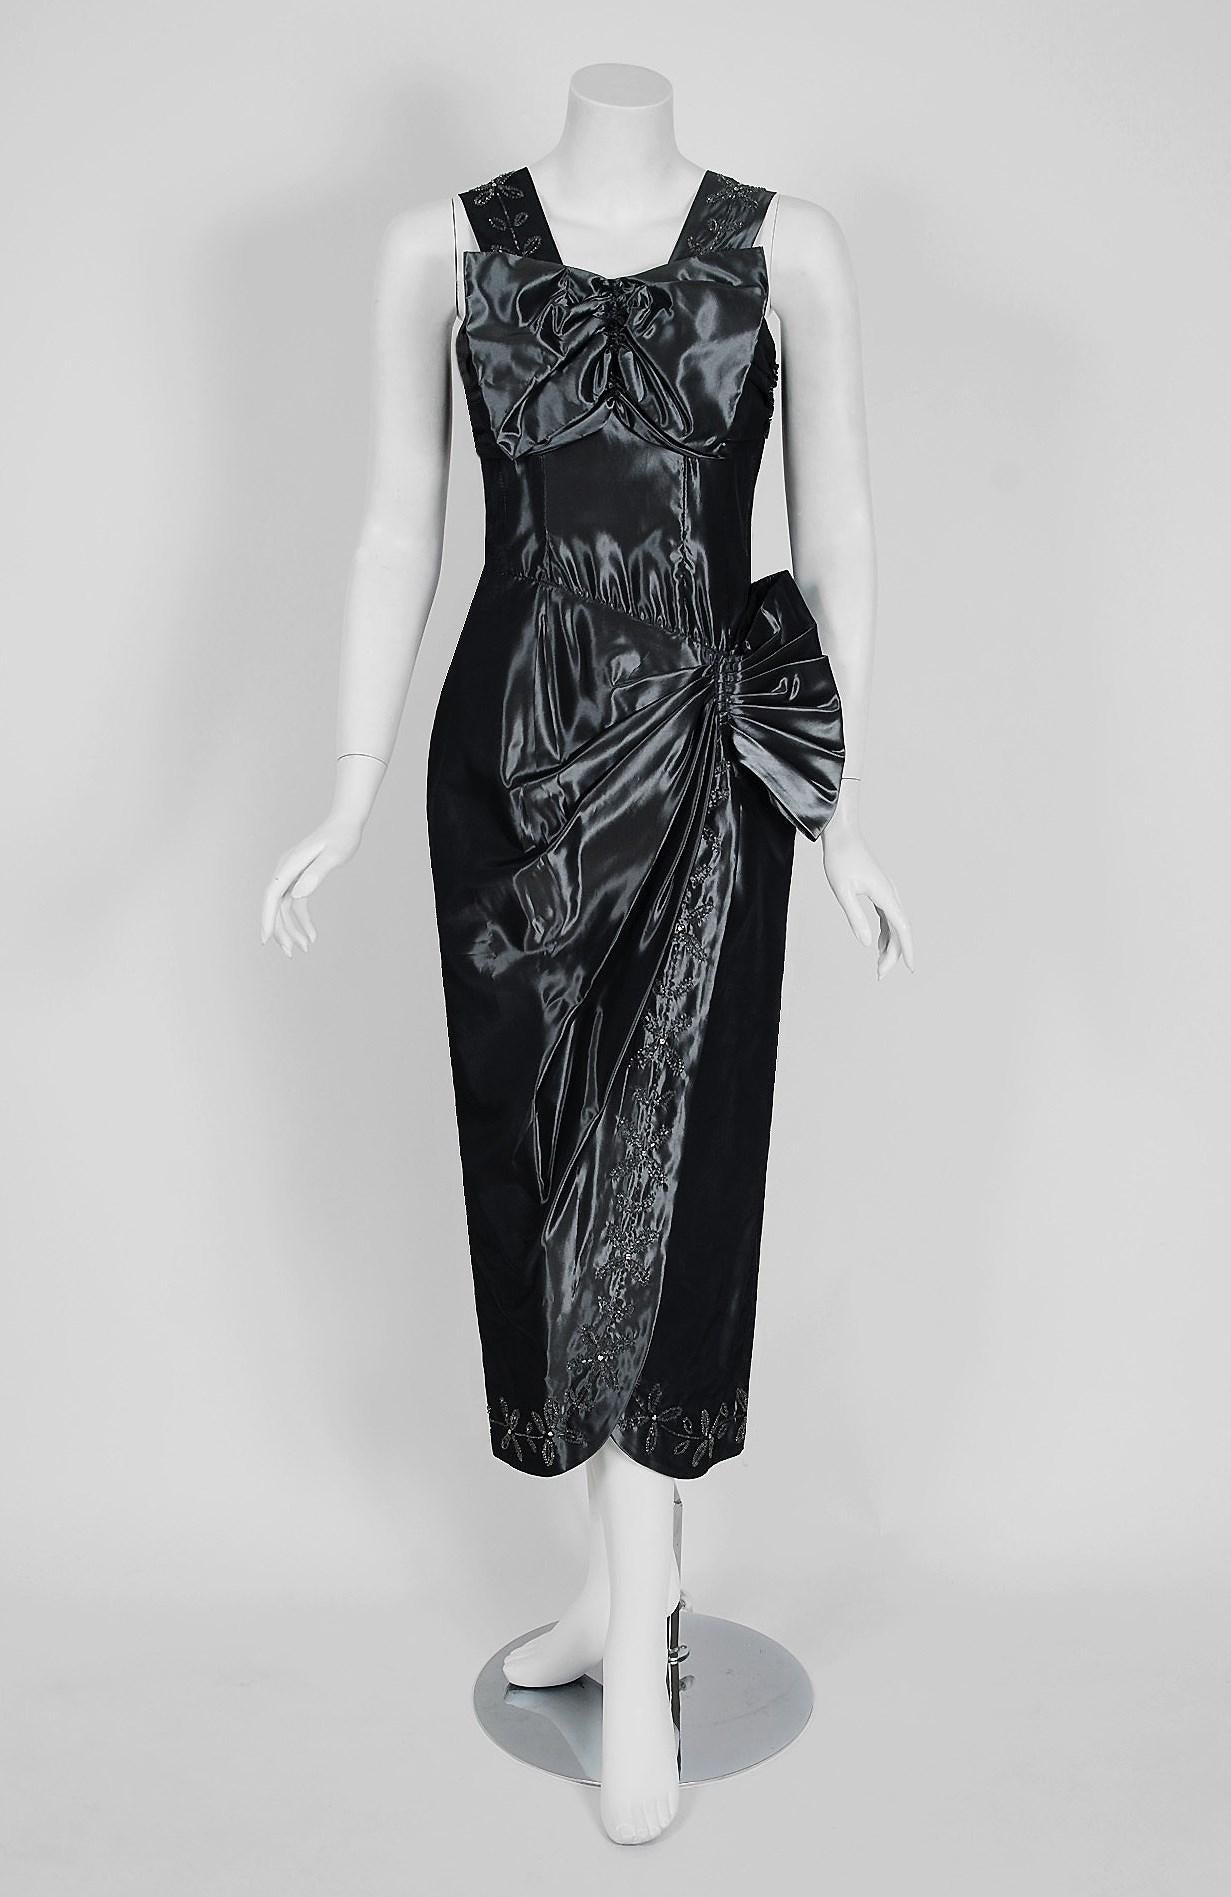 Atemberaubende 1950's gunmetal Silber Bombe benutzerdefinierte Cocktail-Kleid aus der Old Hollywood Ära des Glamours! Das Mieder besteht aus einer verführerischen, tief ausgeschnittenen Schleife, die in eine stark modellierte, asymmetrische